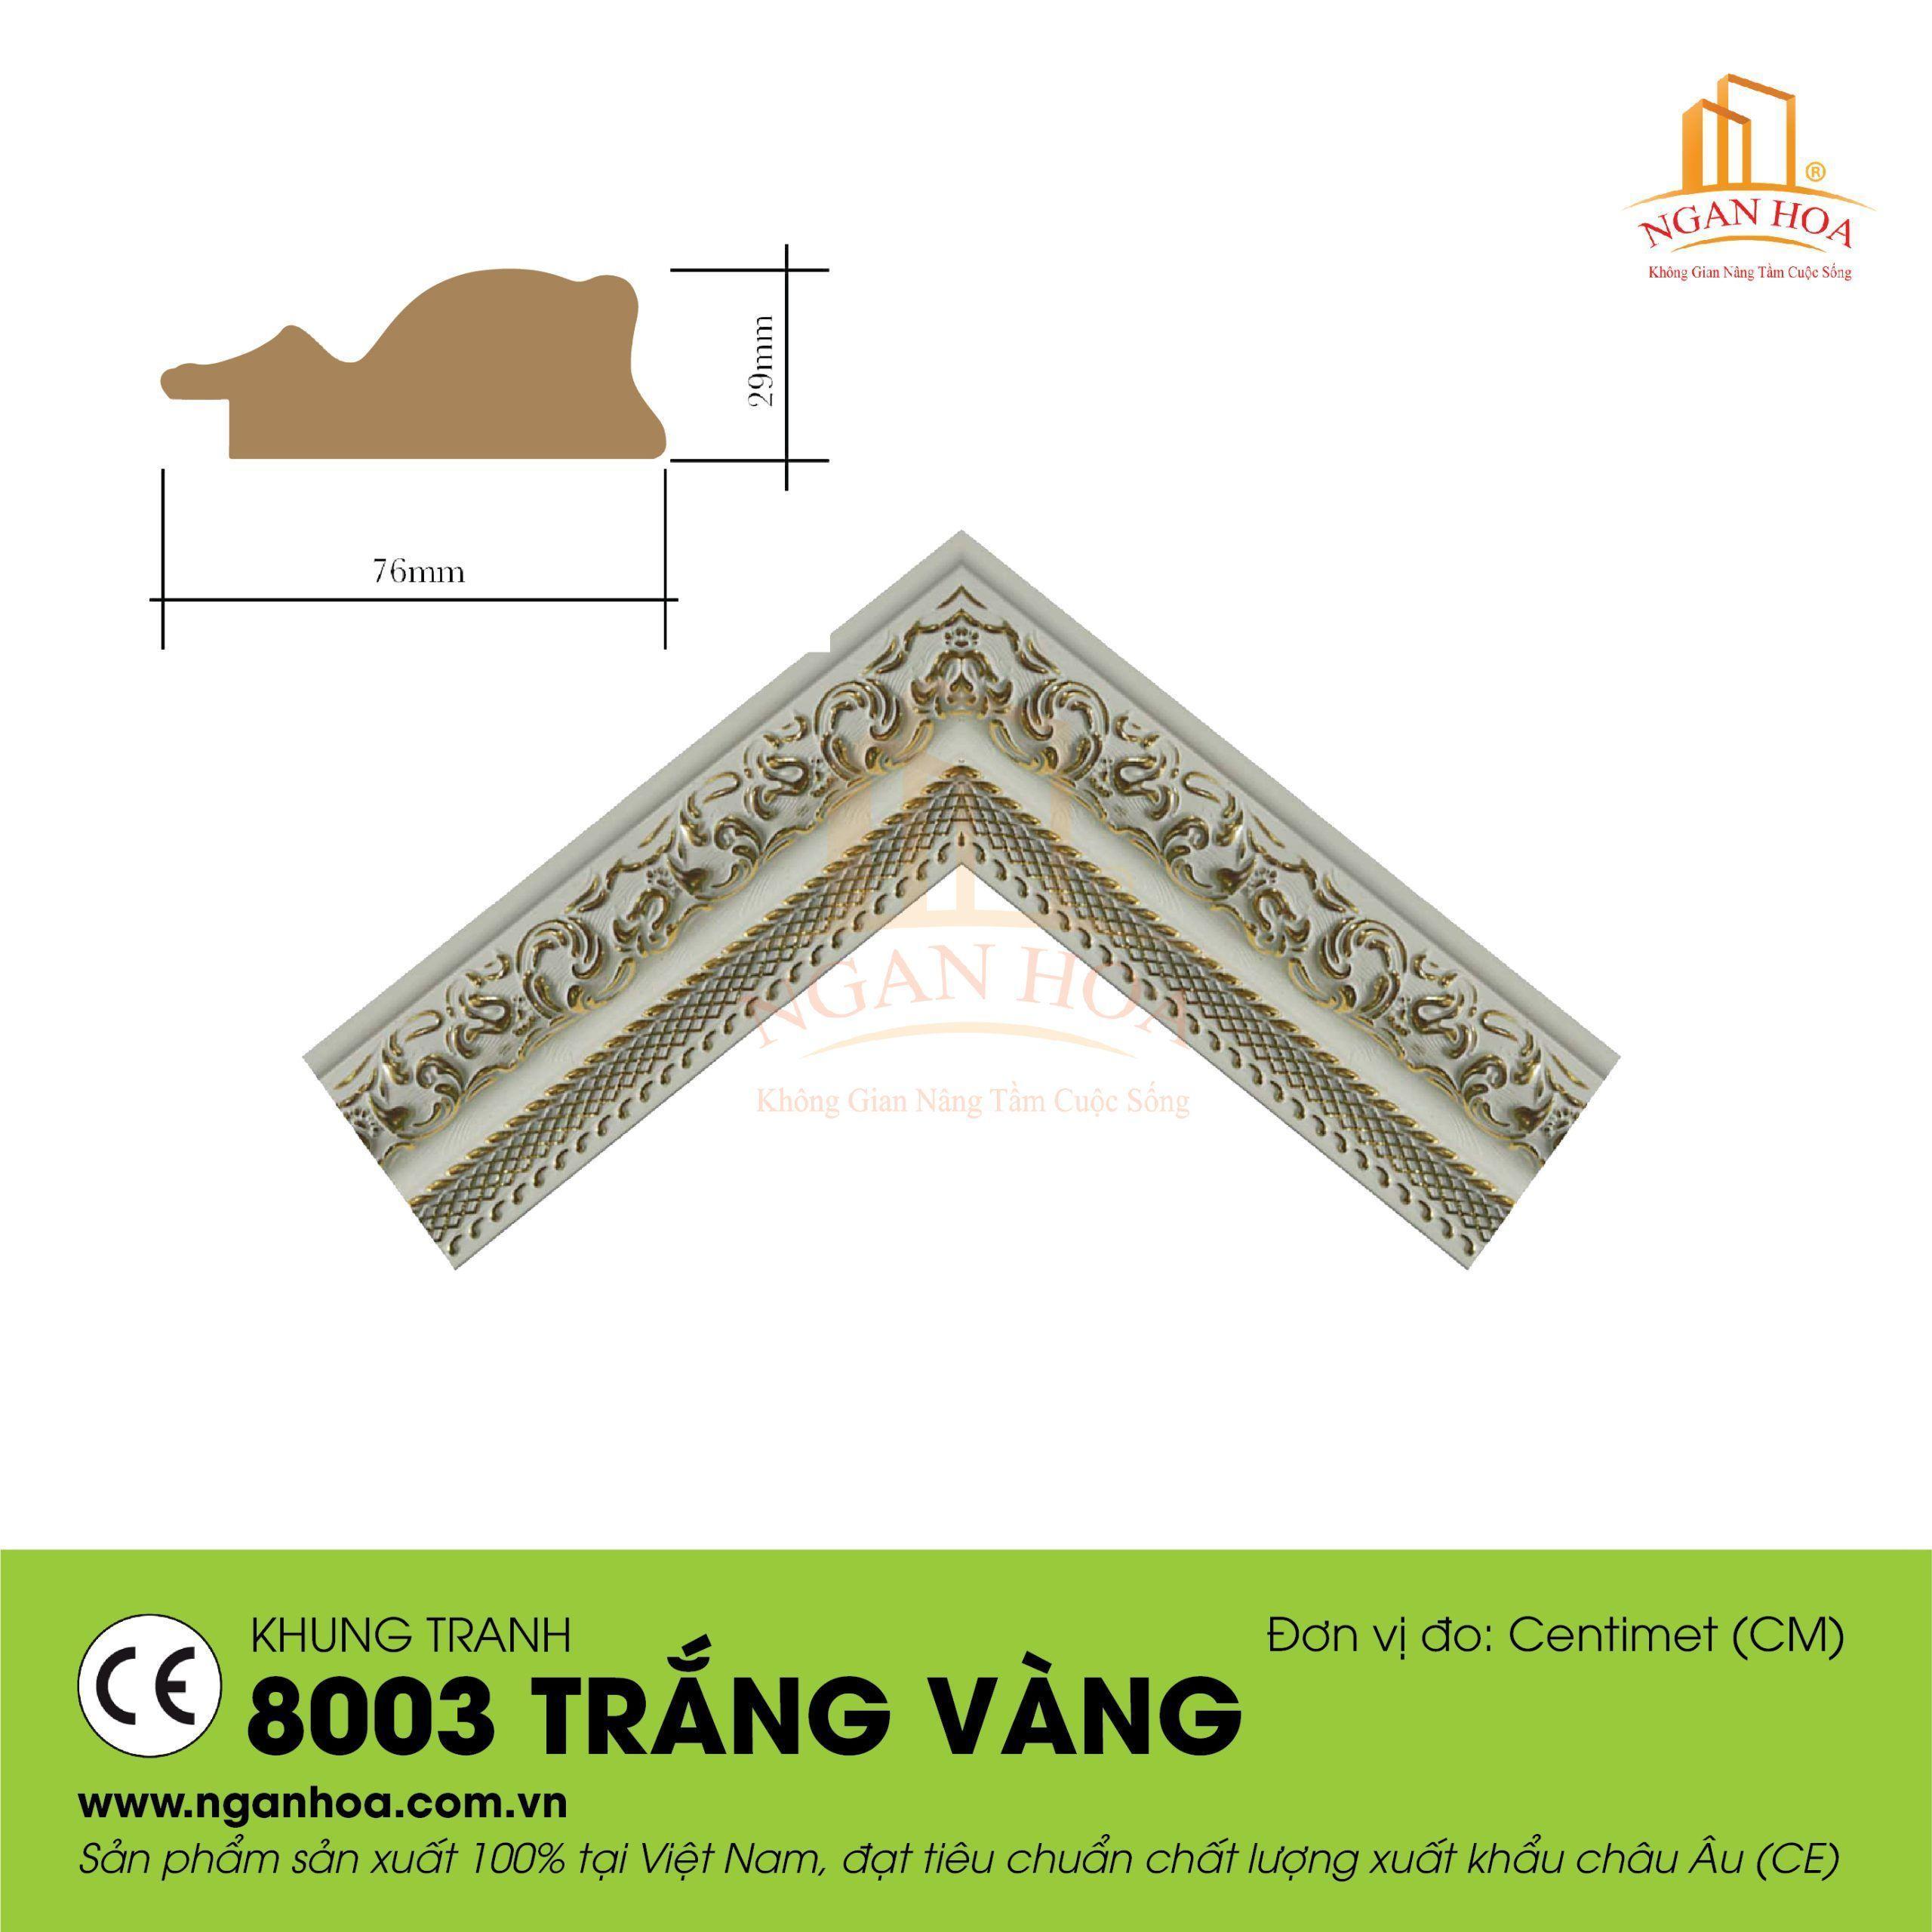 KT 8003 Trang Vang scaled